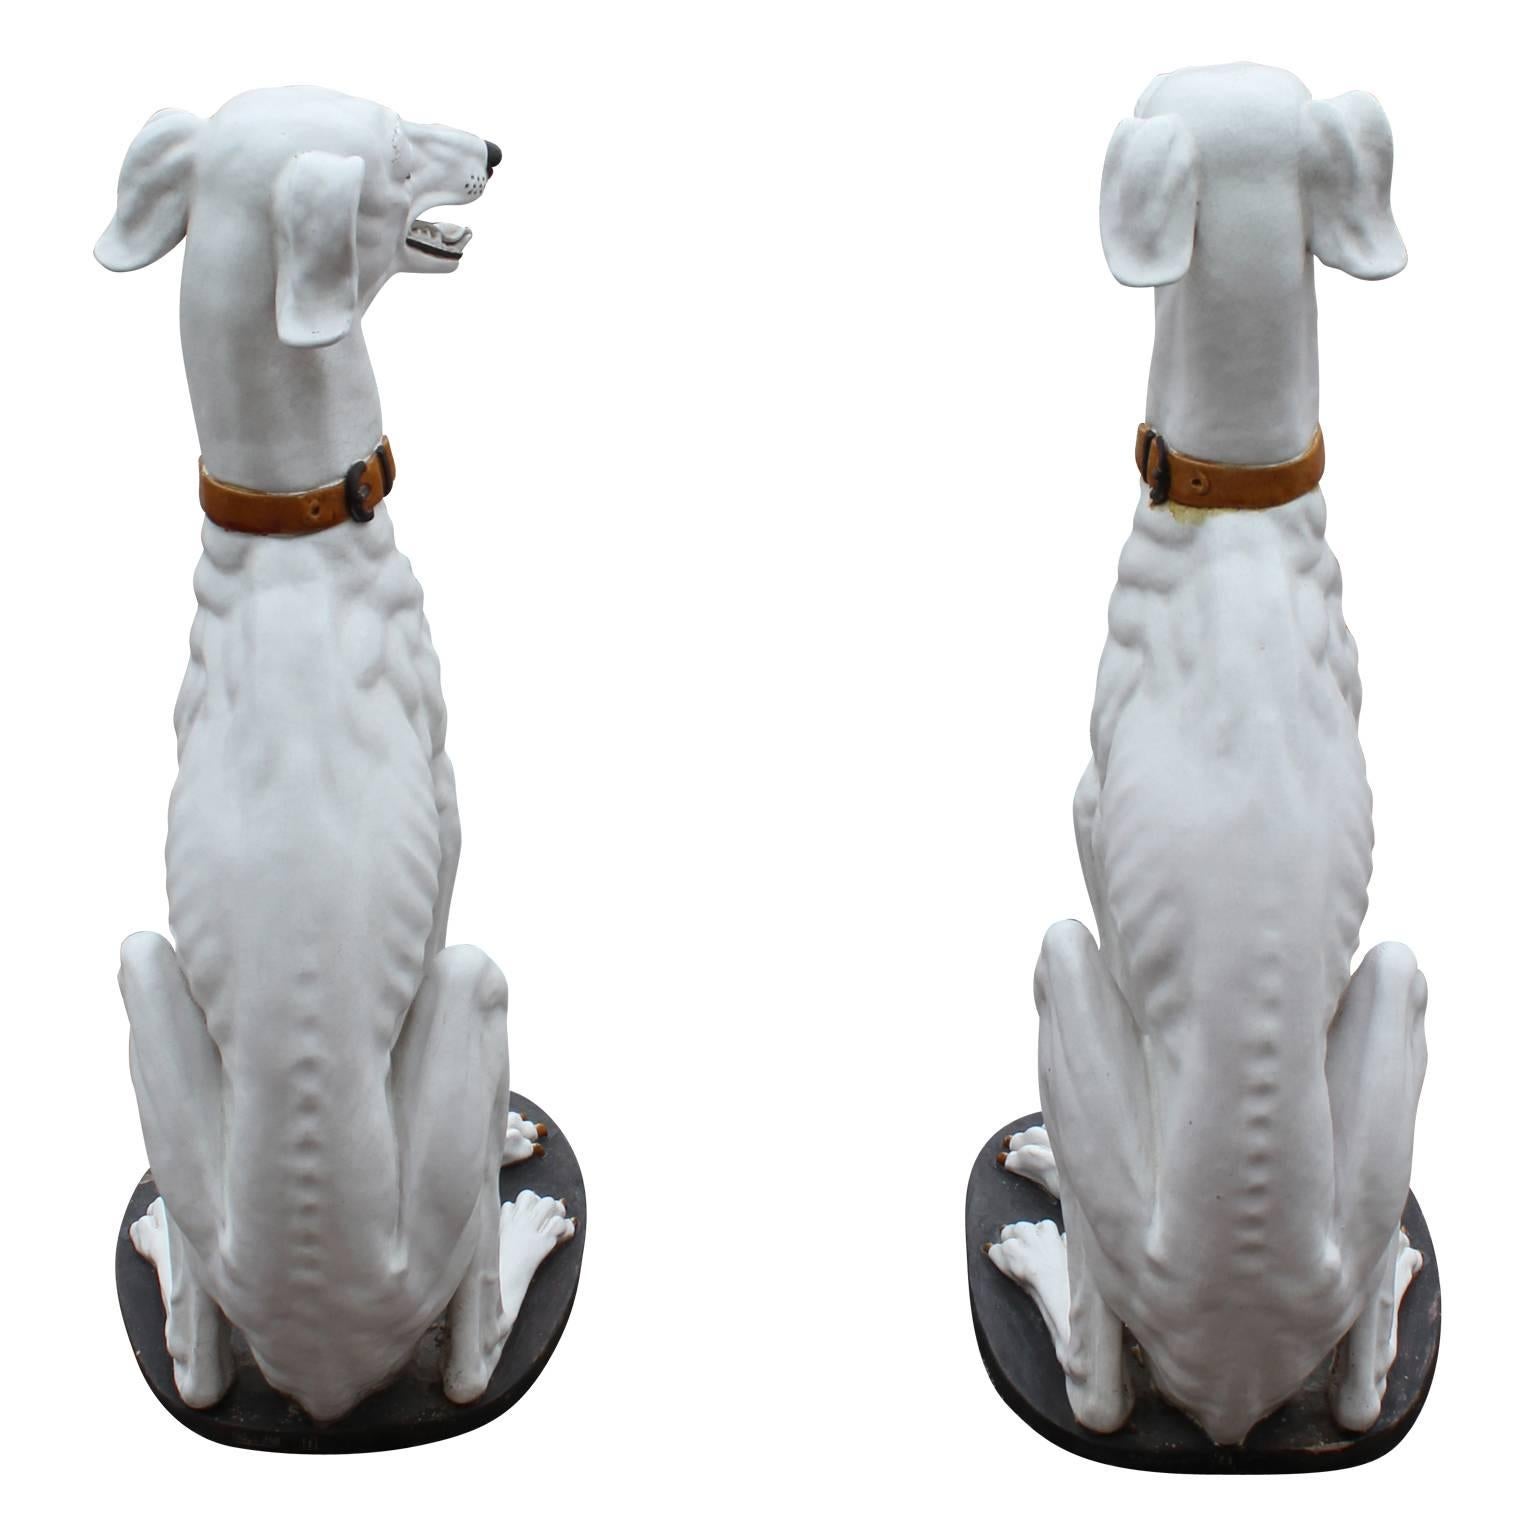 Paire de magnifiques statues de chiens lévriers en céramique blanche fabriquées en Espagne. Absolument unique et magnifique. Il convient parfaitement à tout espace à la recherche d'une touche haut de gamme.